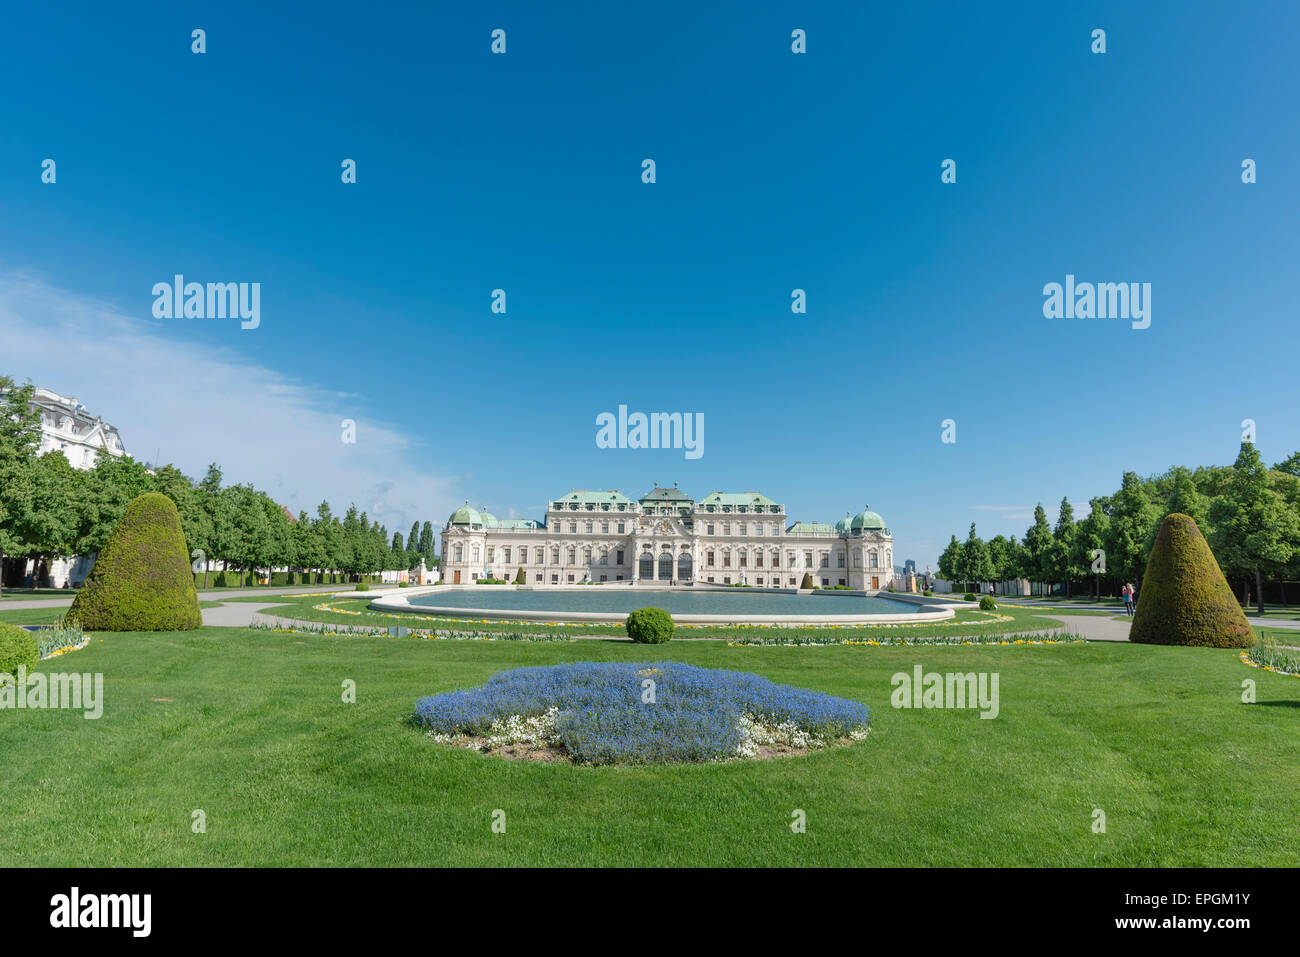 Wien Schloss Belvedere, mit Blick auf die südliche Fassade und Garten des barocken Schloss Belvedere, Wien, Wien, Österreich. Stockfoto